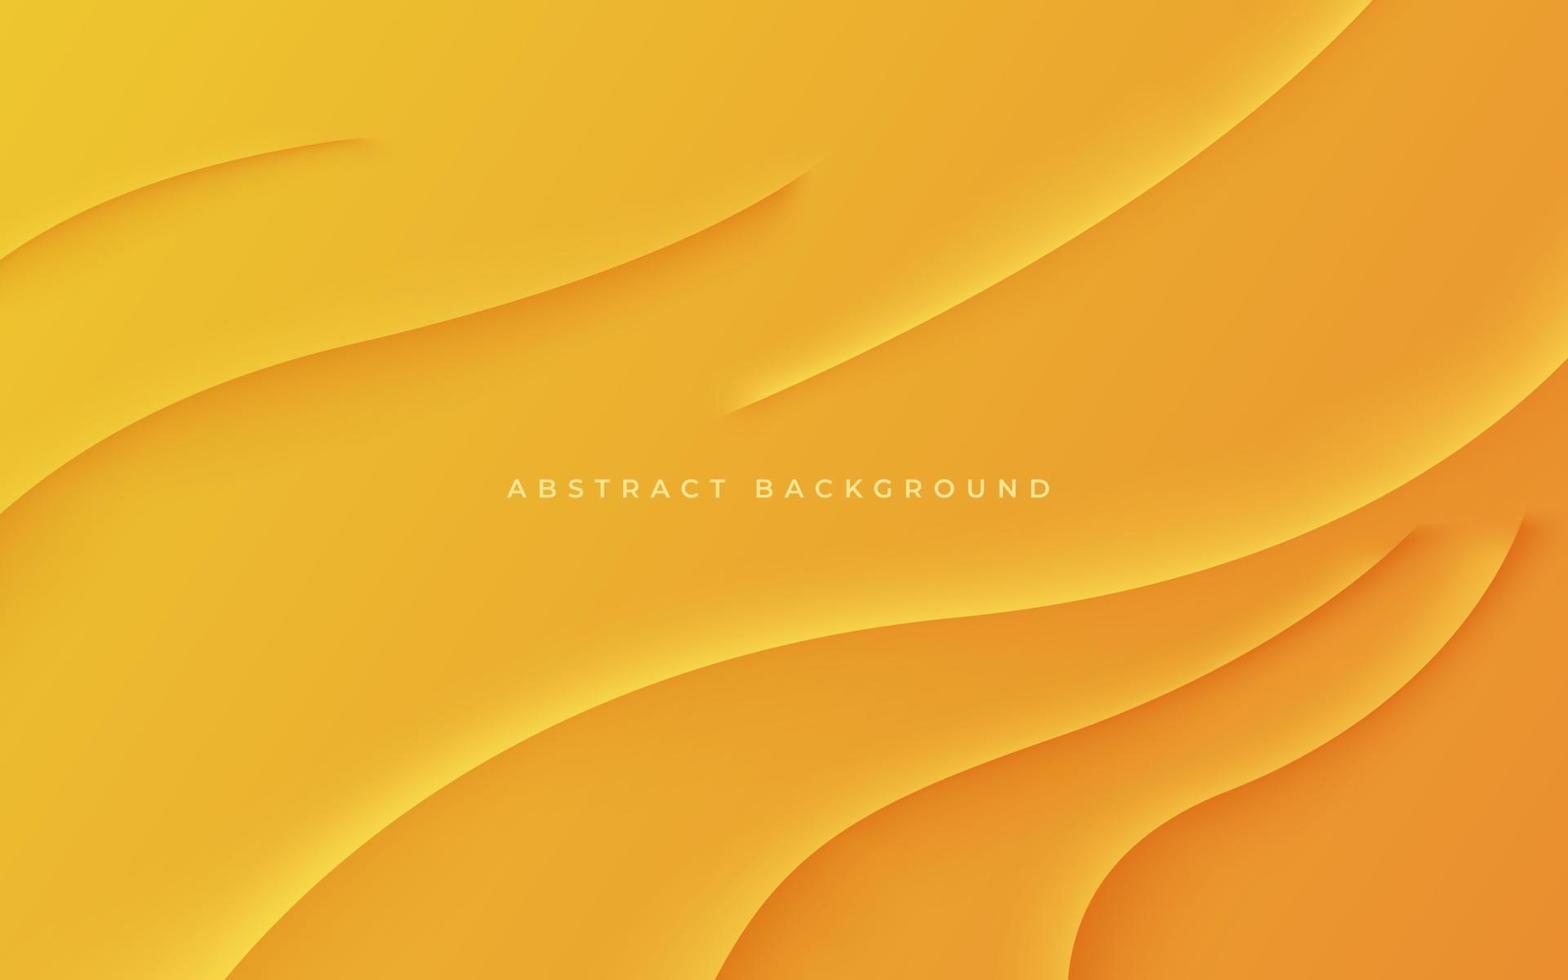 sombra ondulada dinámica naranja amarilla abstracta y luz diseño moderno geométrico futurista vector ilustración de fondo.